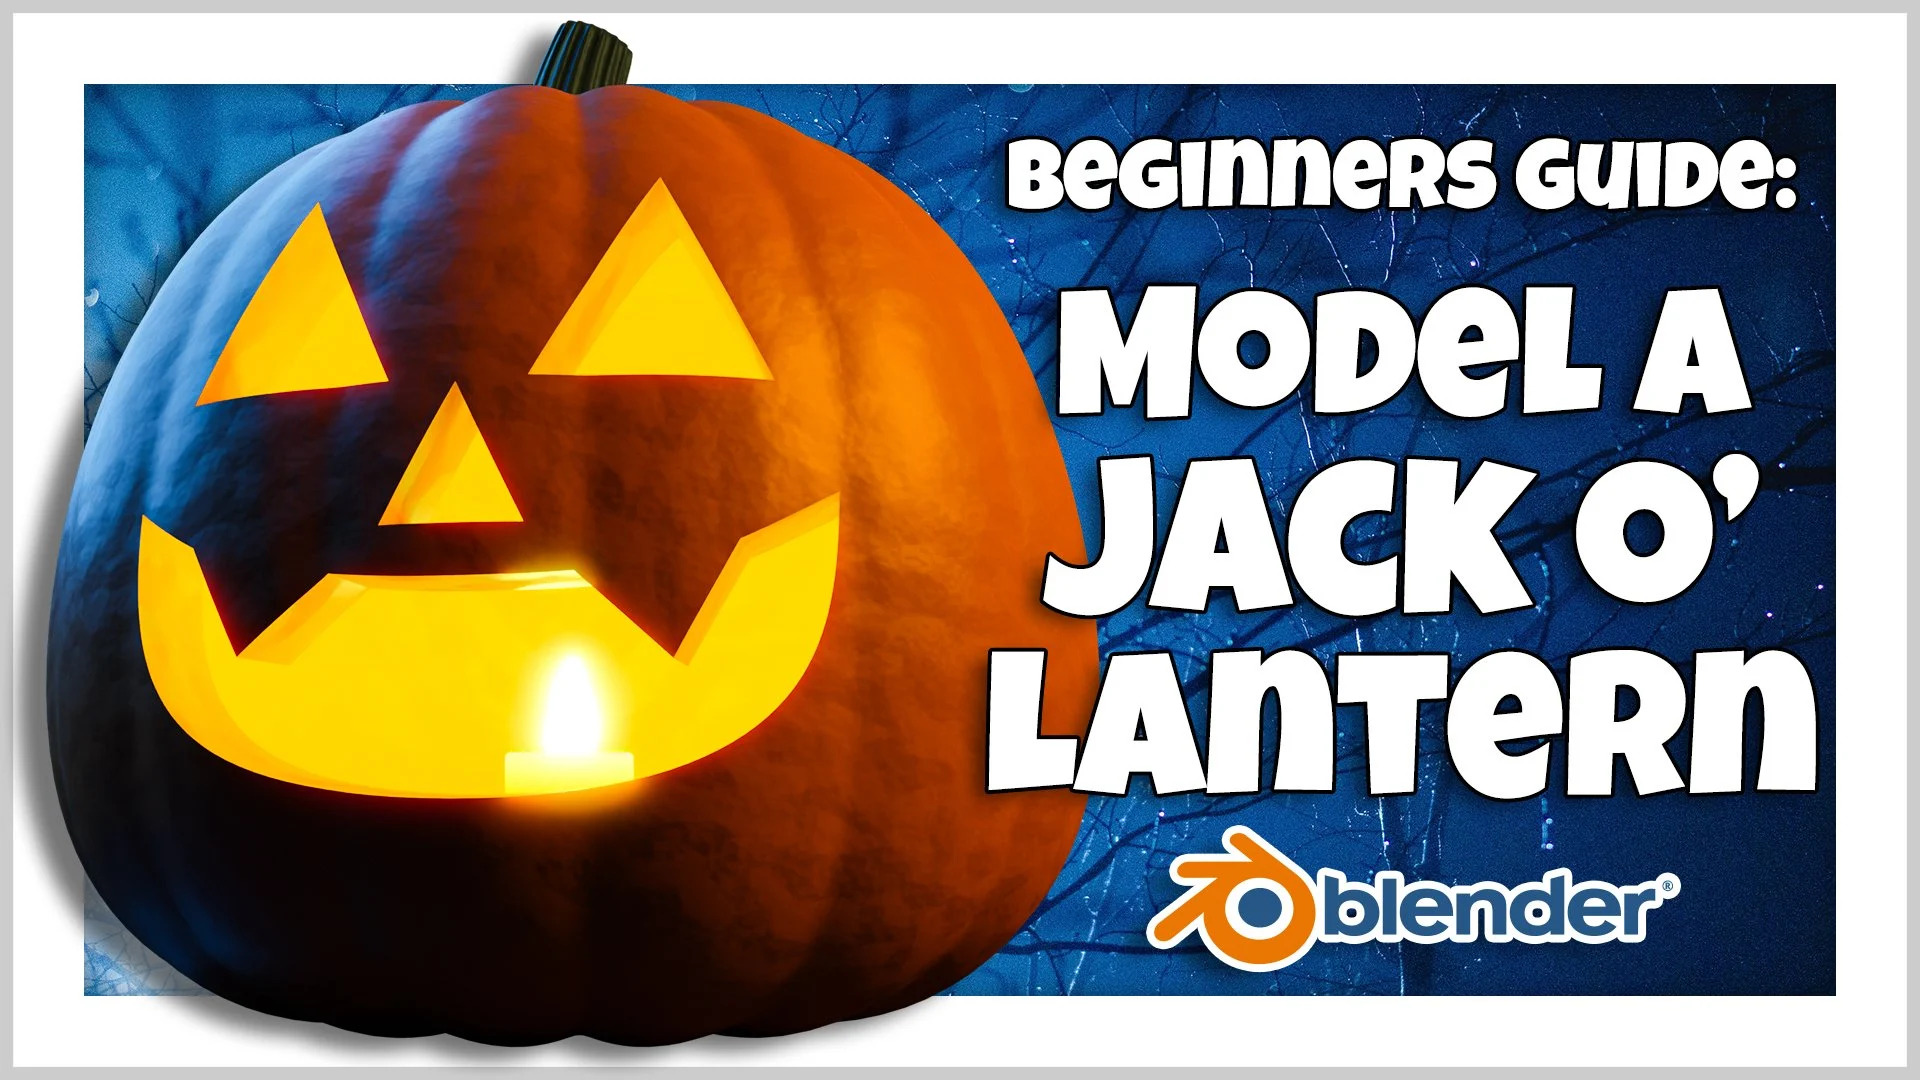 Blender 3D for Beginners: Model a Jack-o’-lantern